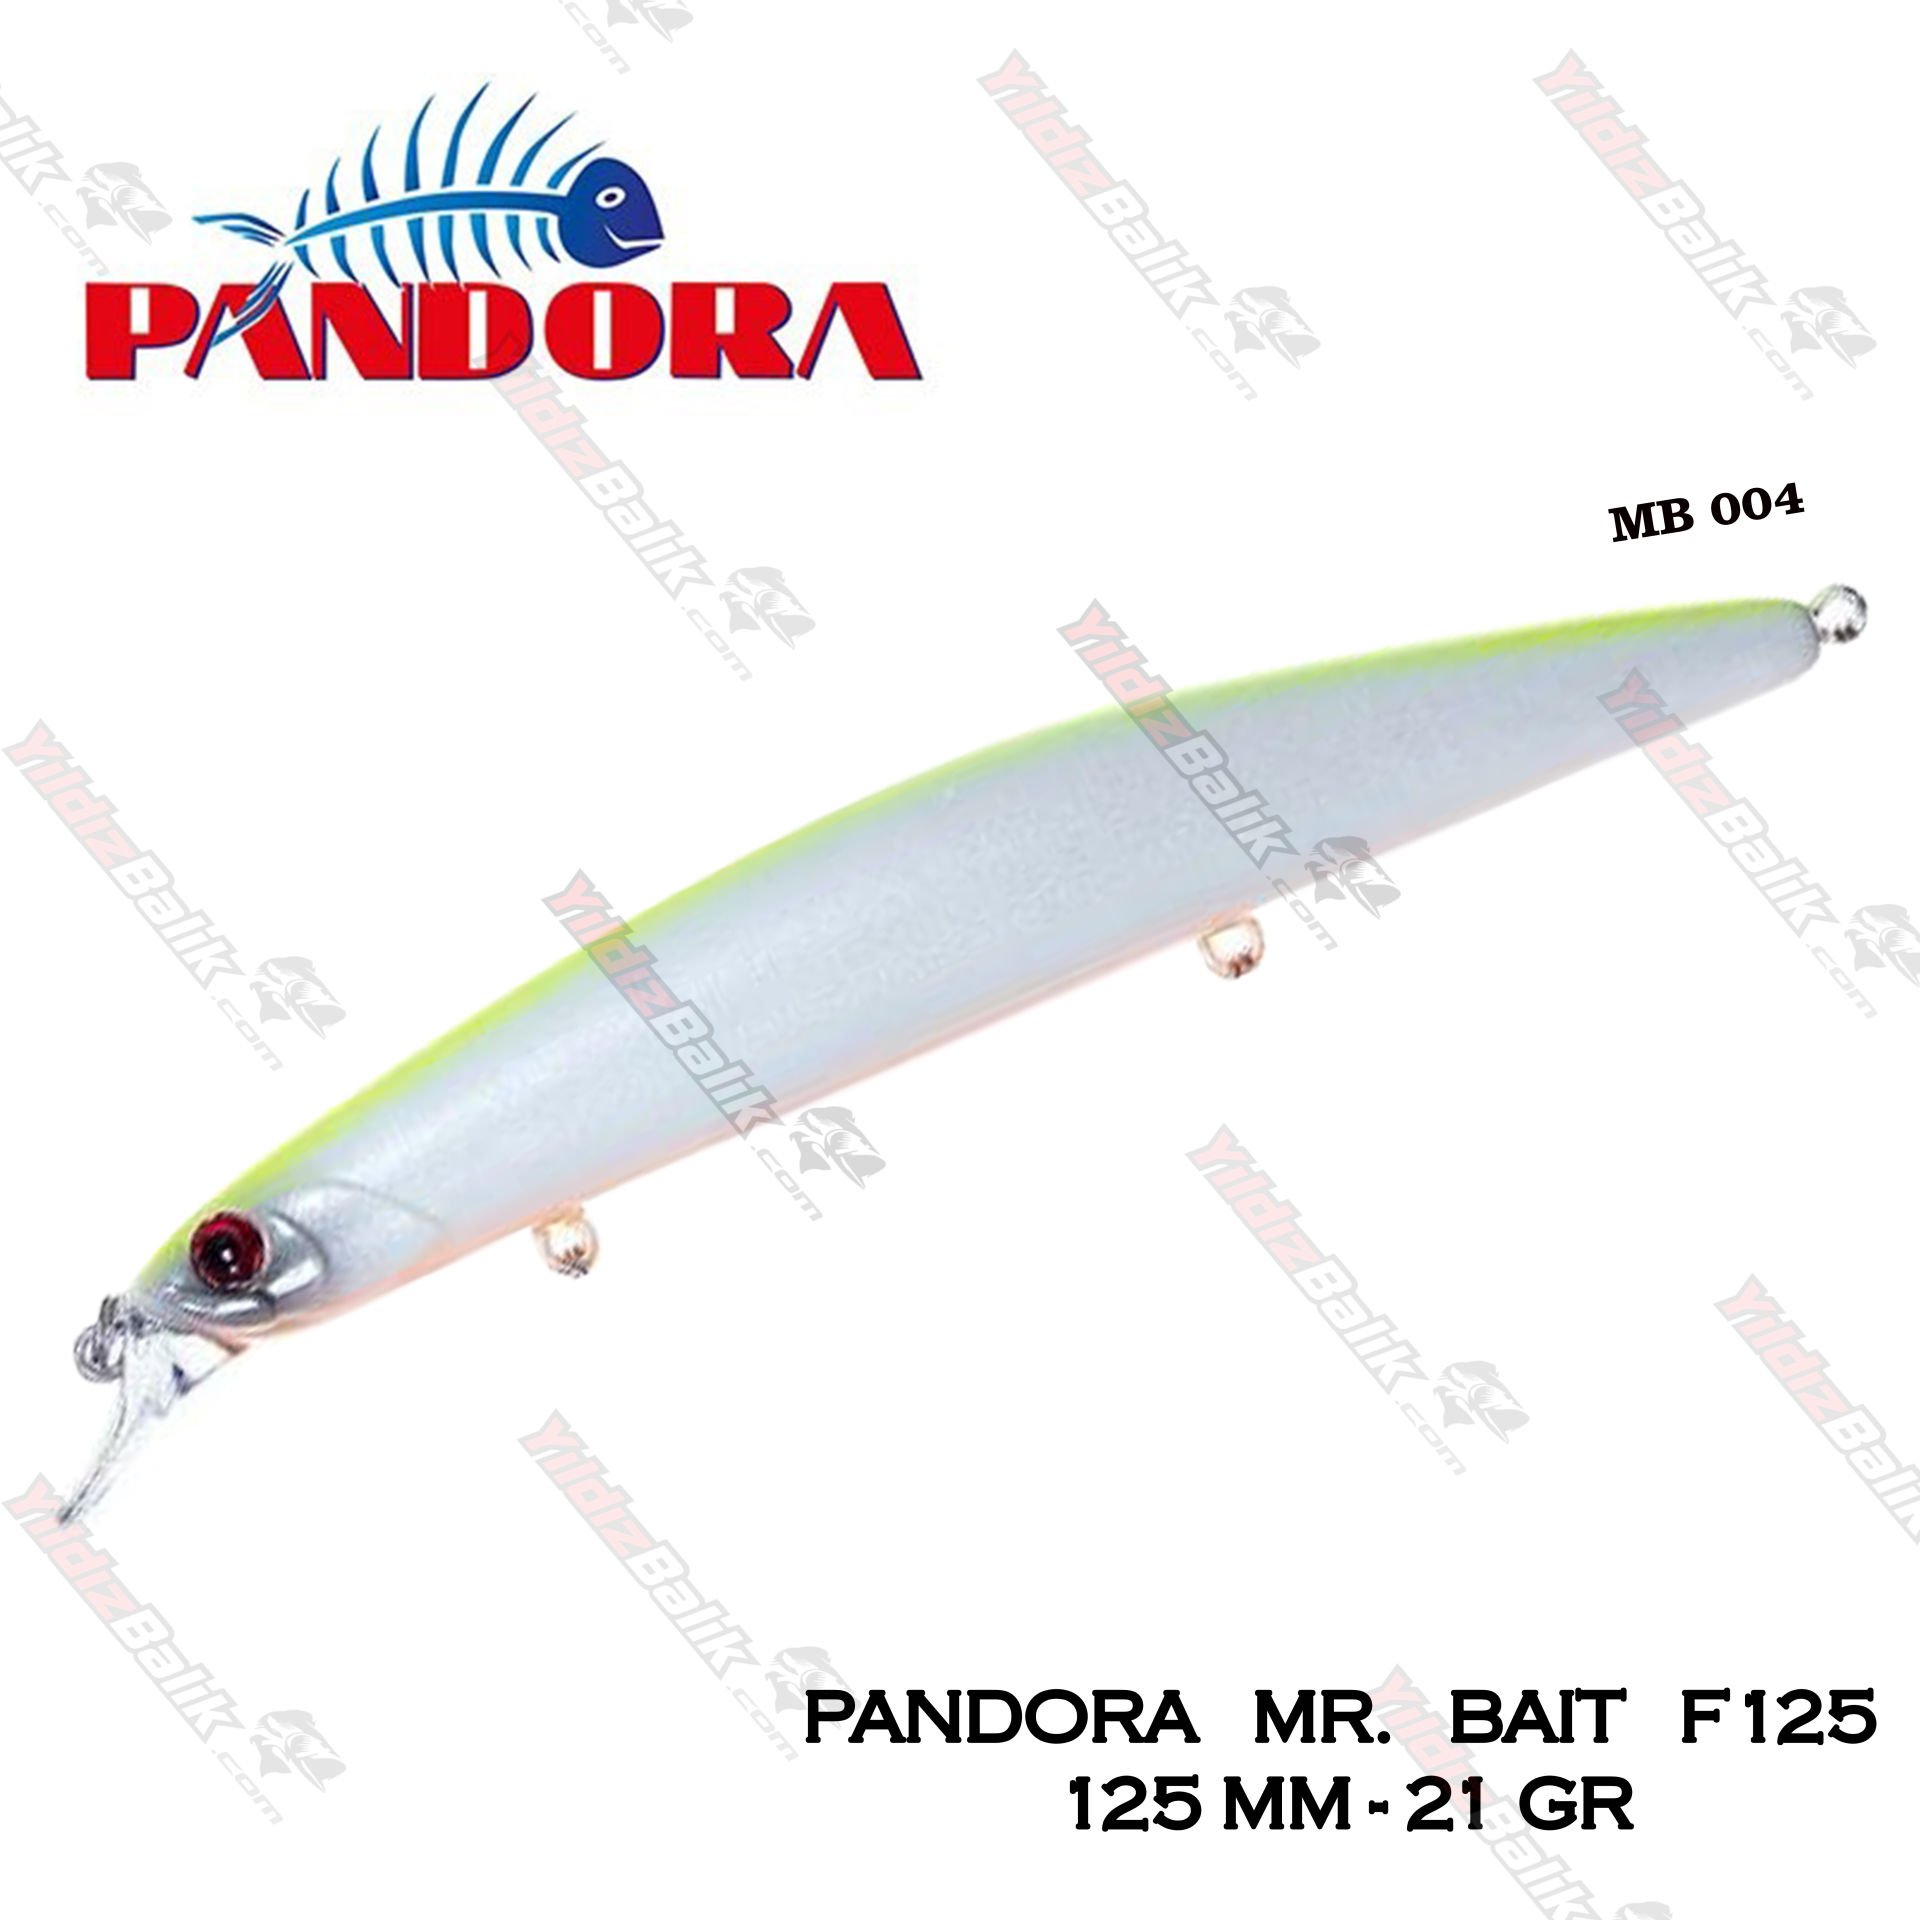 Pandora Mr.Bait F125 125 mm. 21 gr. #M004